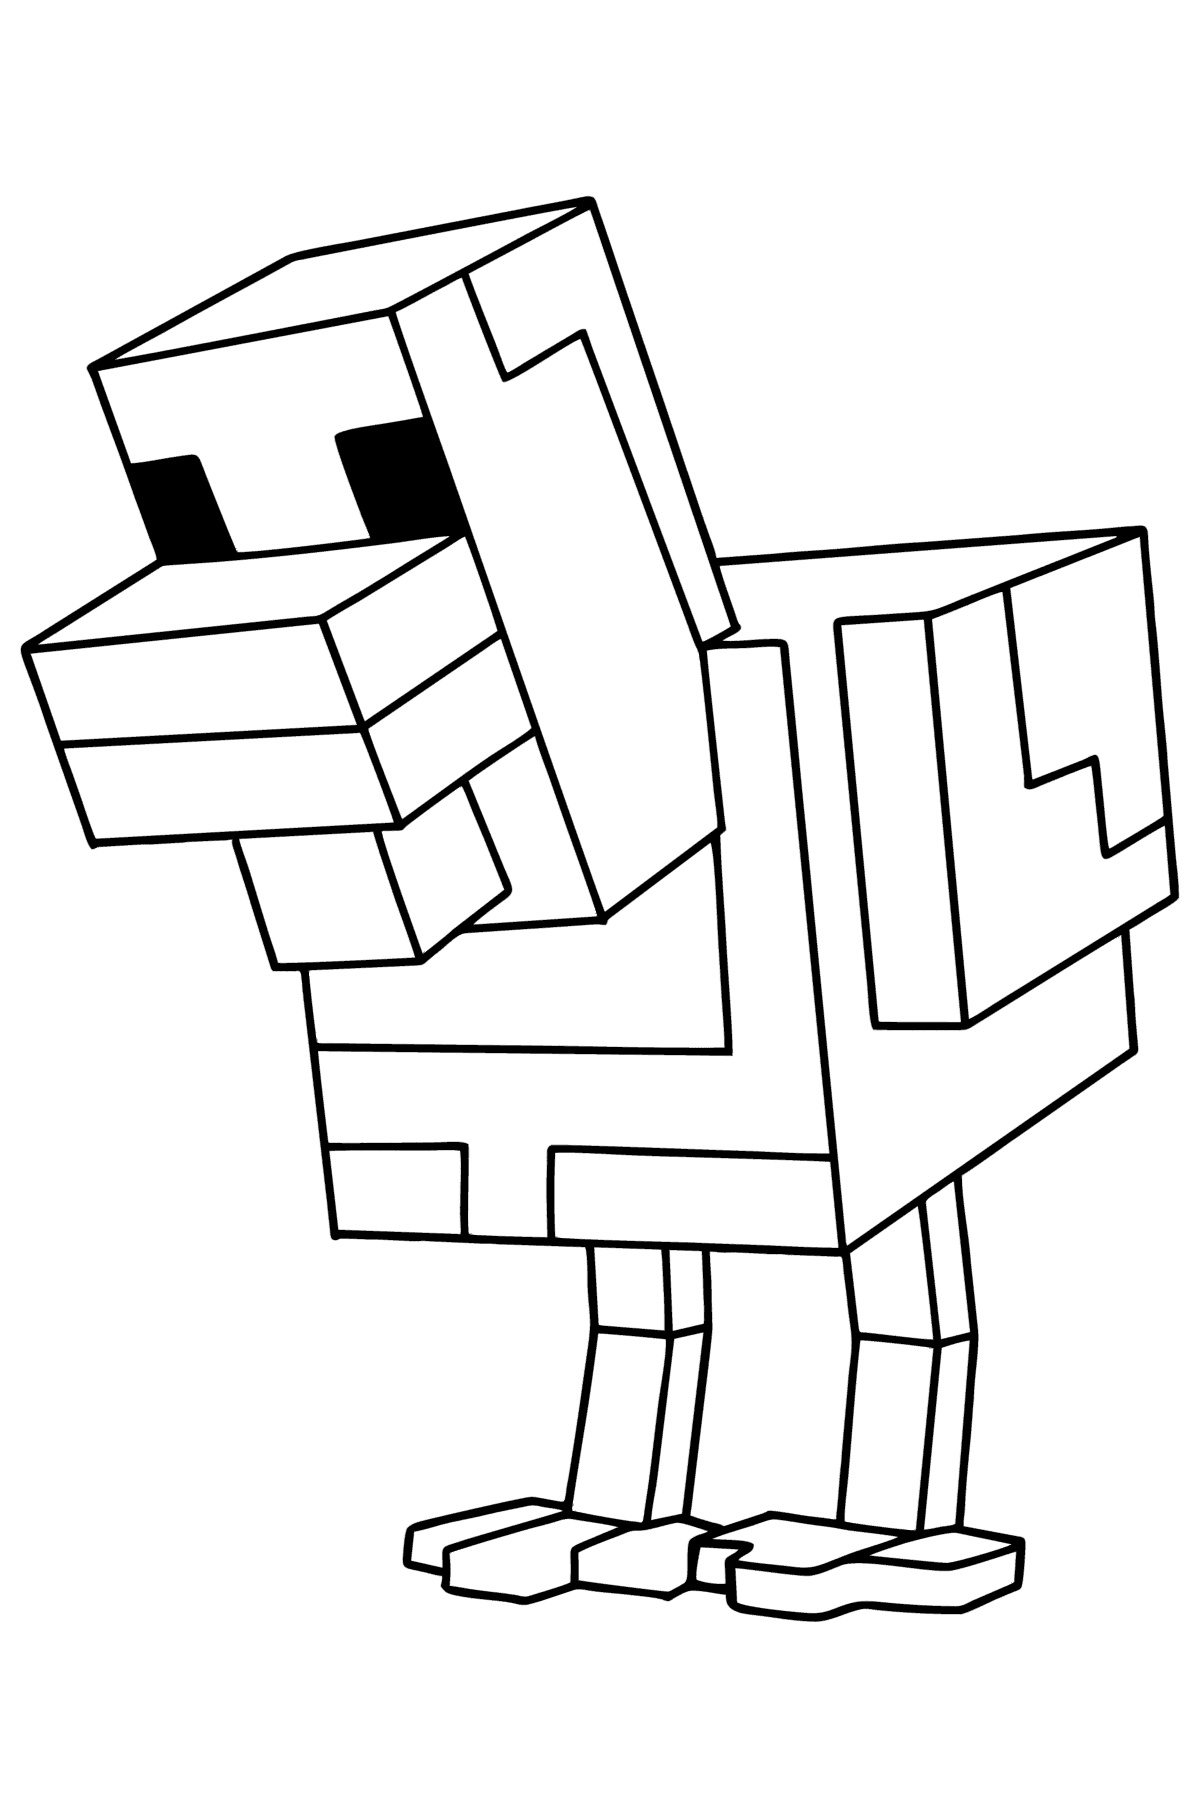 Mewarnai gambar Minecraft Chicken - Mewarnai gambar untuk anak-anak